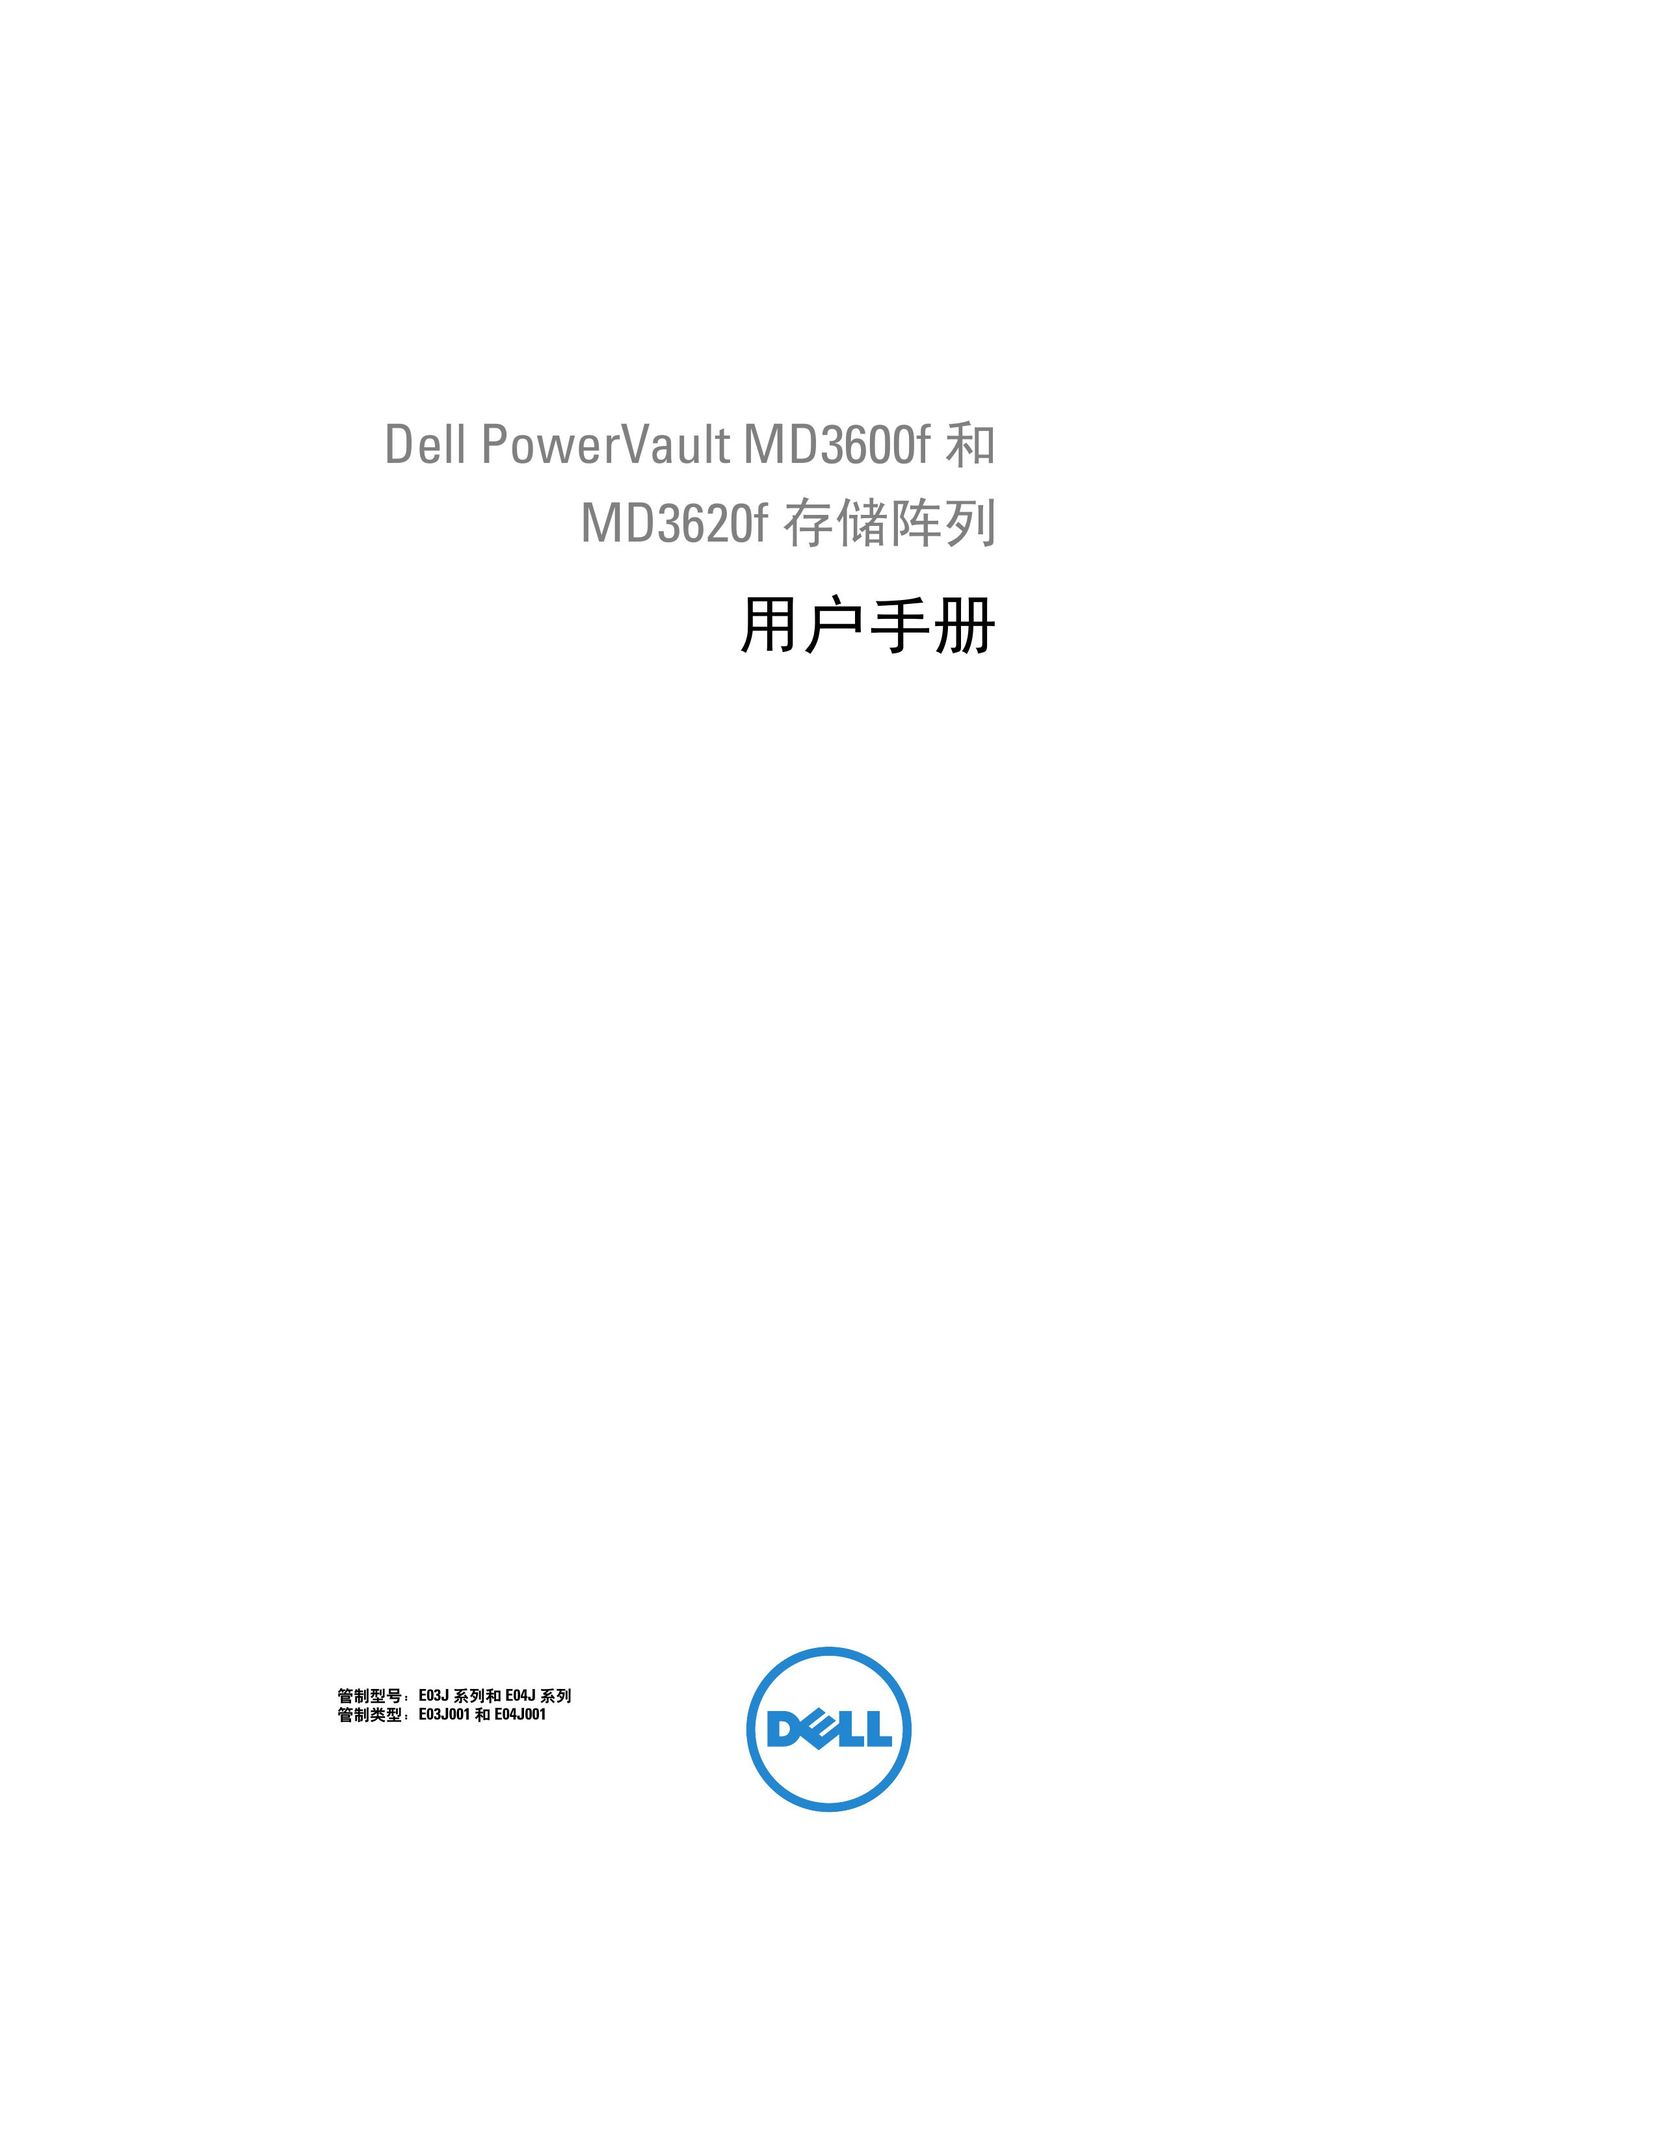 Dell MD3620f Computer Accessories User Manual